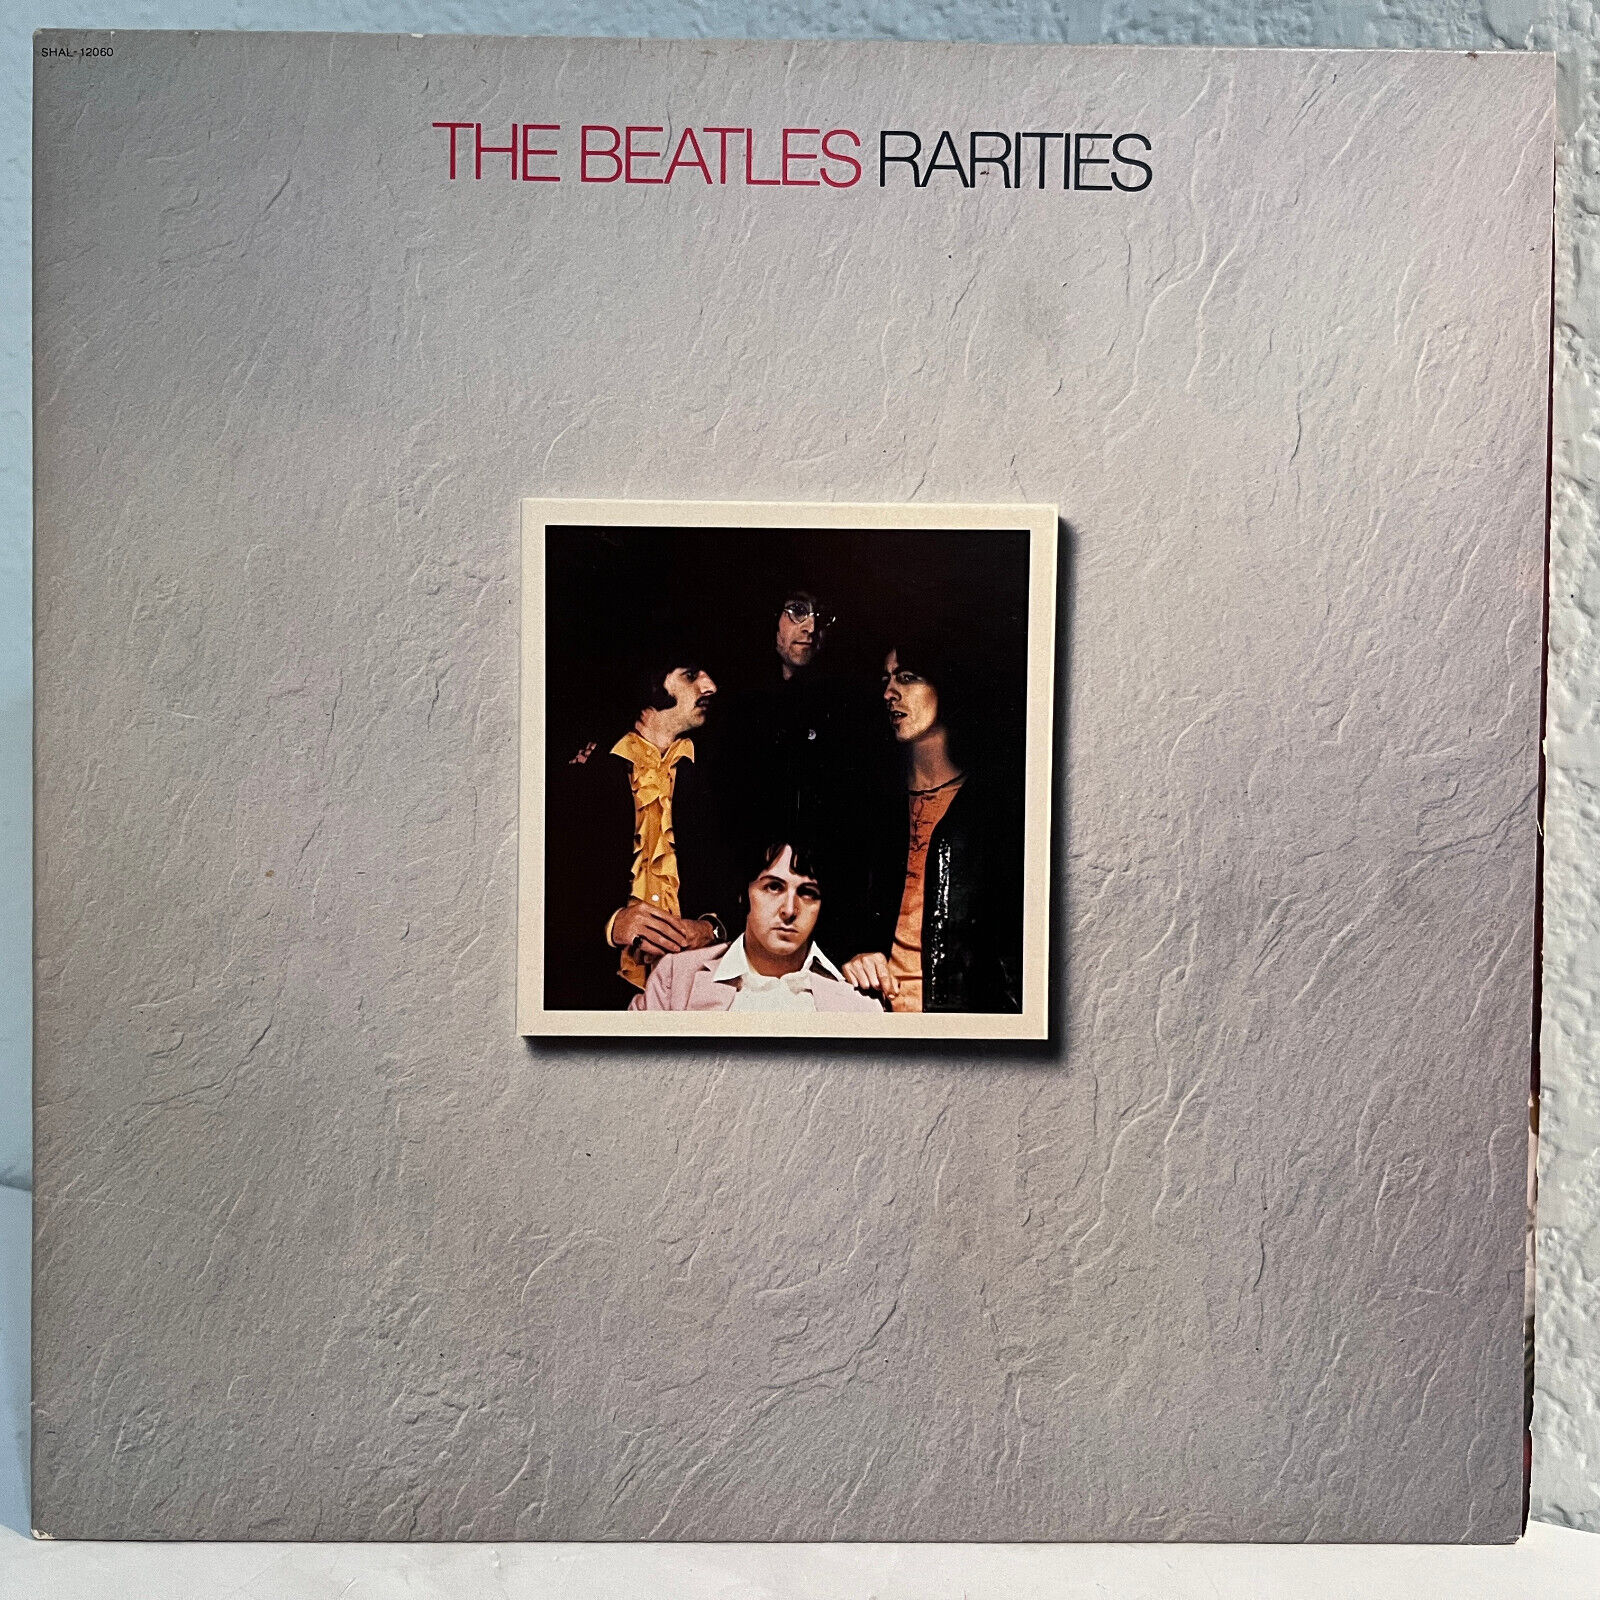 THE BEATLES - Rarities (Capitol SHAL-12060) - 12" Vinyl Record LP - EX